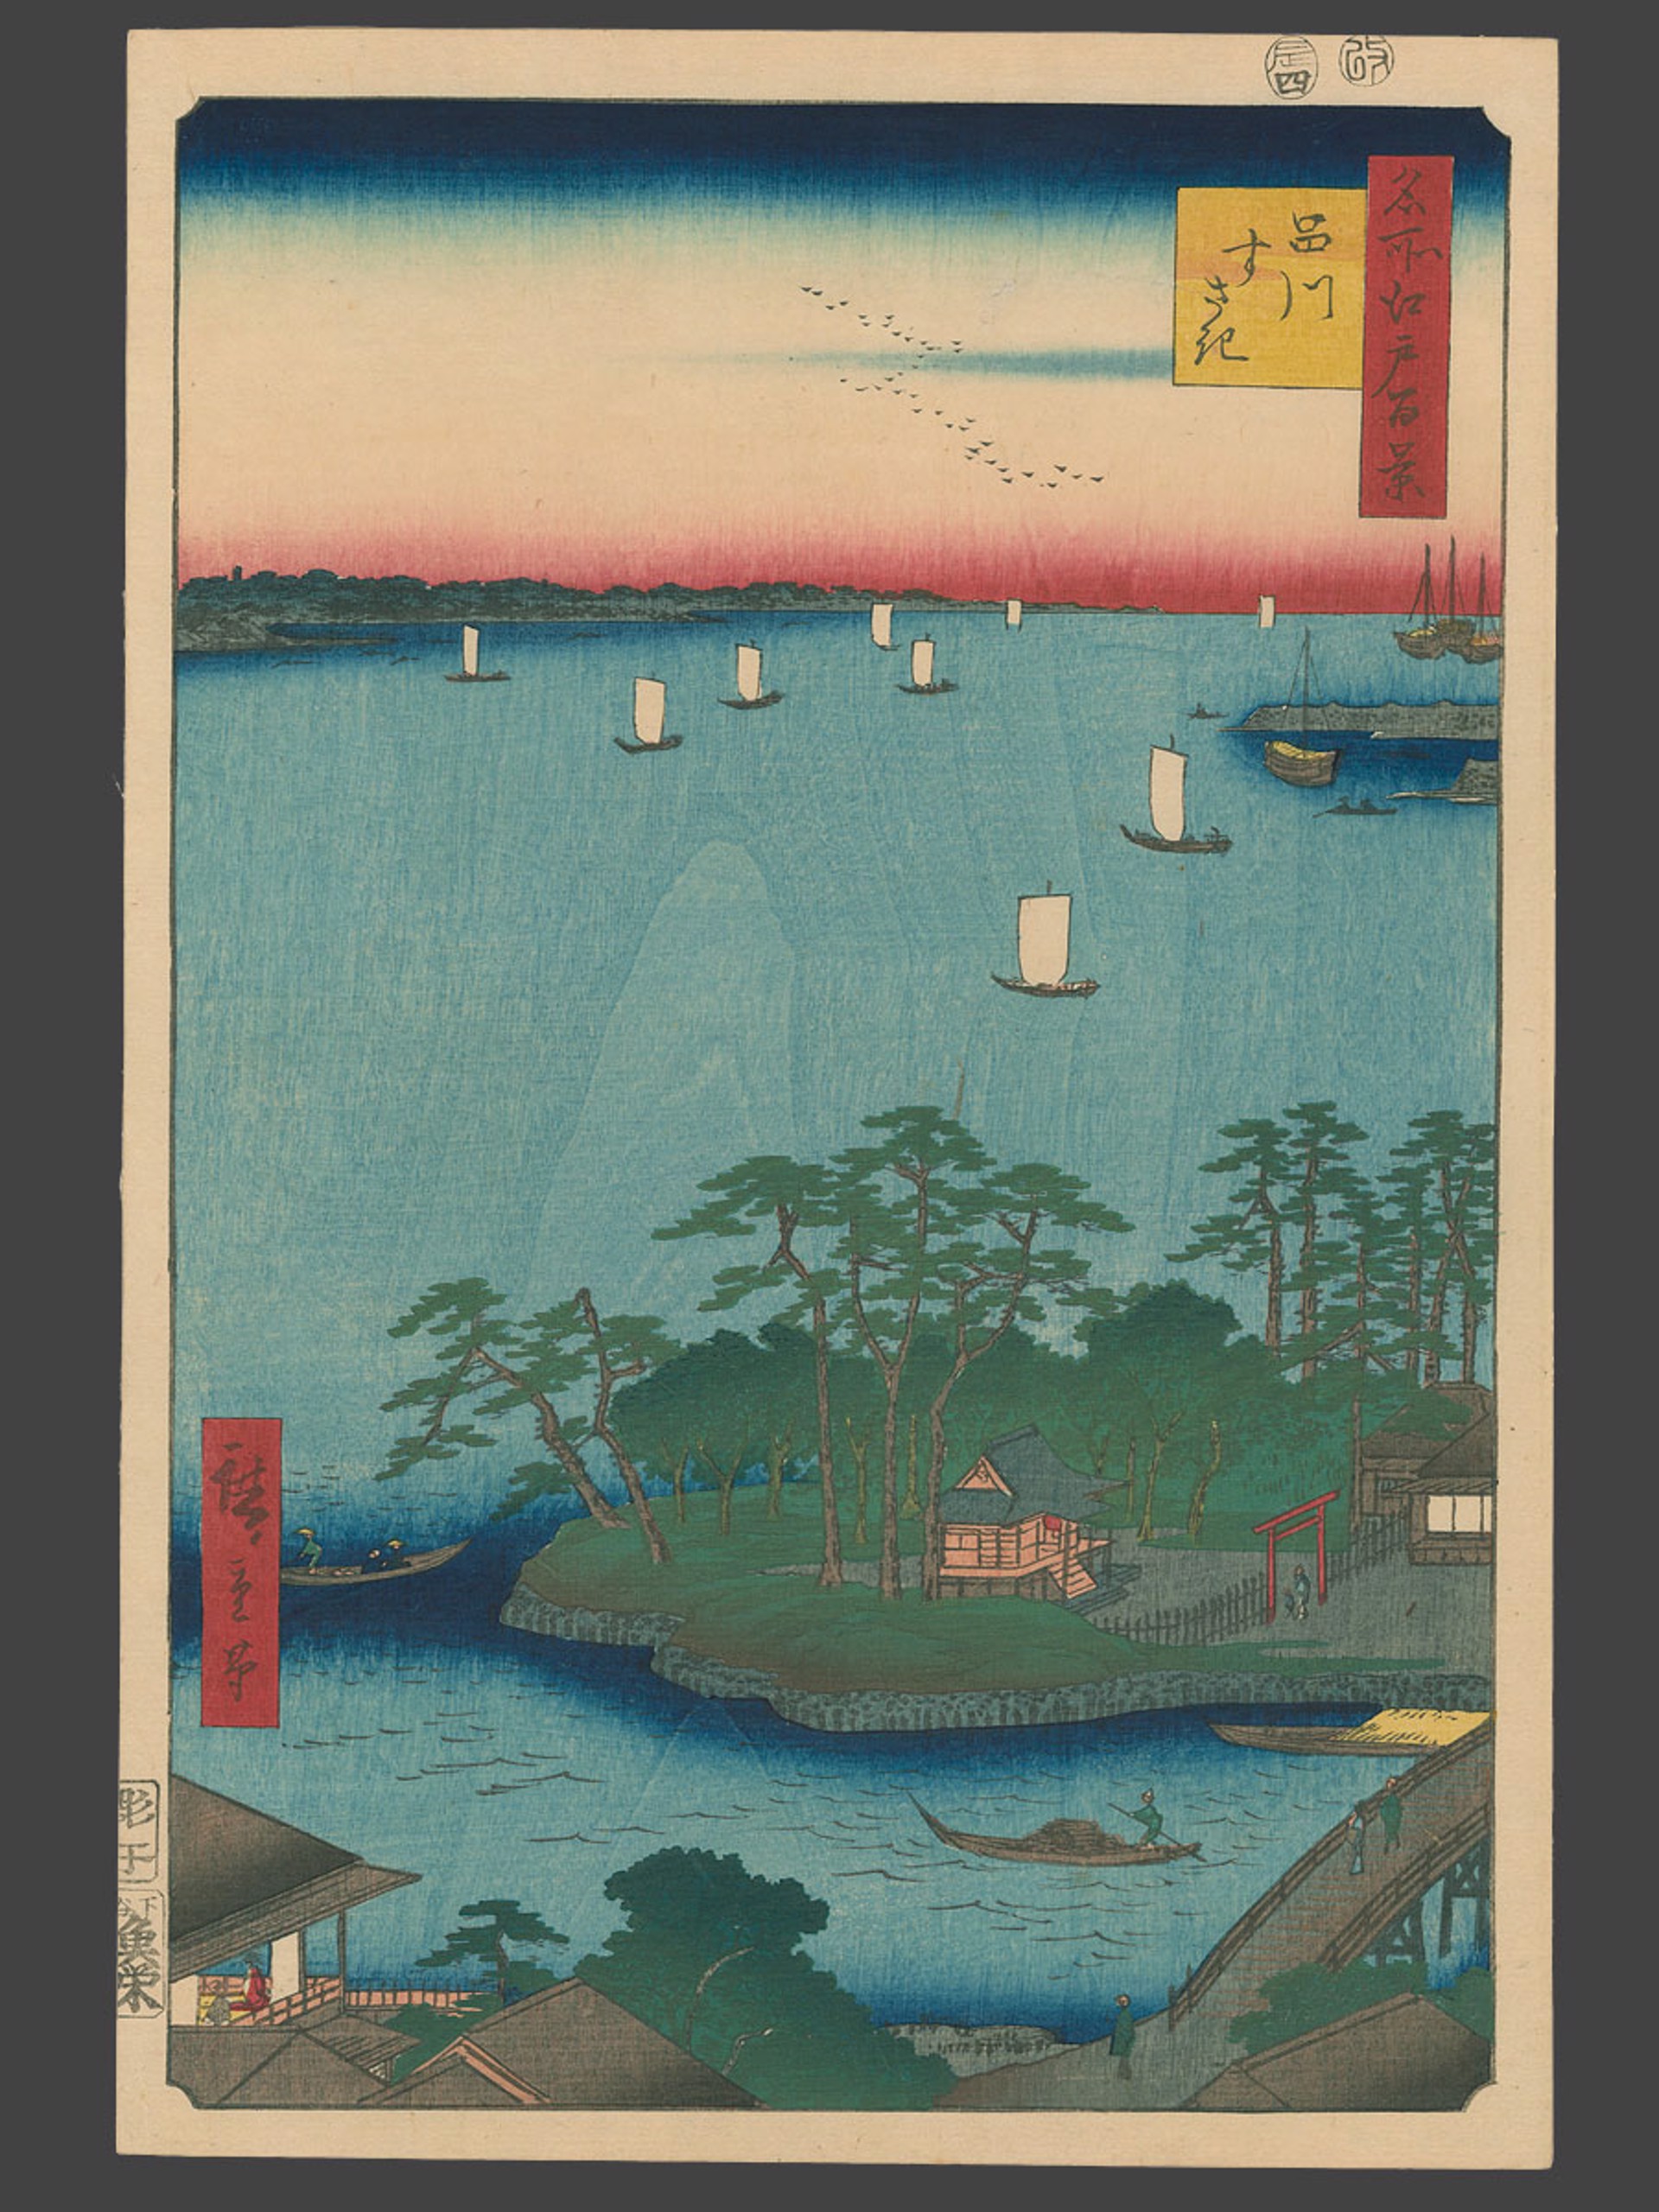 #83 Suzaki Sandbank at Shinagawa 100 Views of Edo by Hiroshige